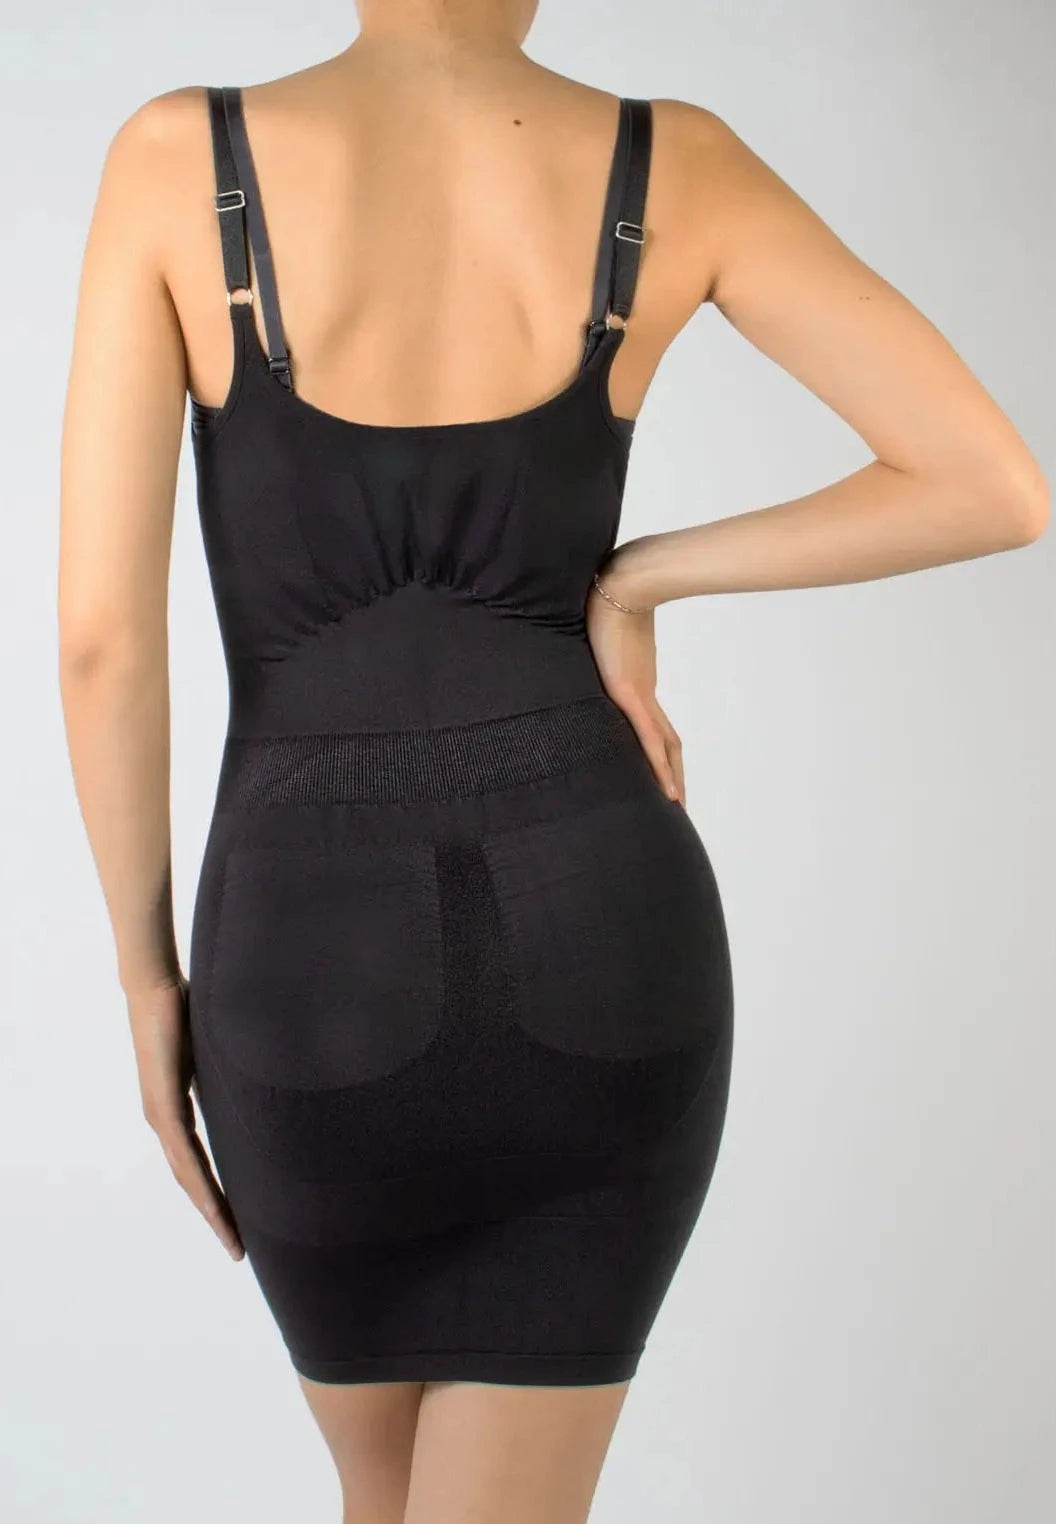 https://www.tightsdept.com/cdn/shop/products/cette-shape-dress-blk-back.webp?v=1655815707&width=1445